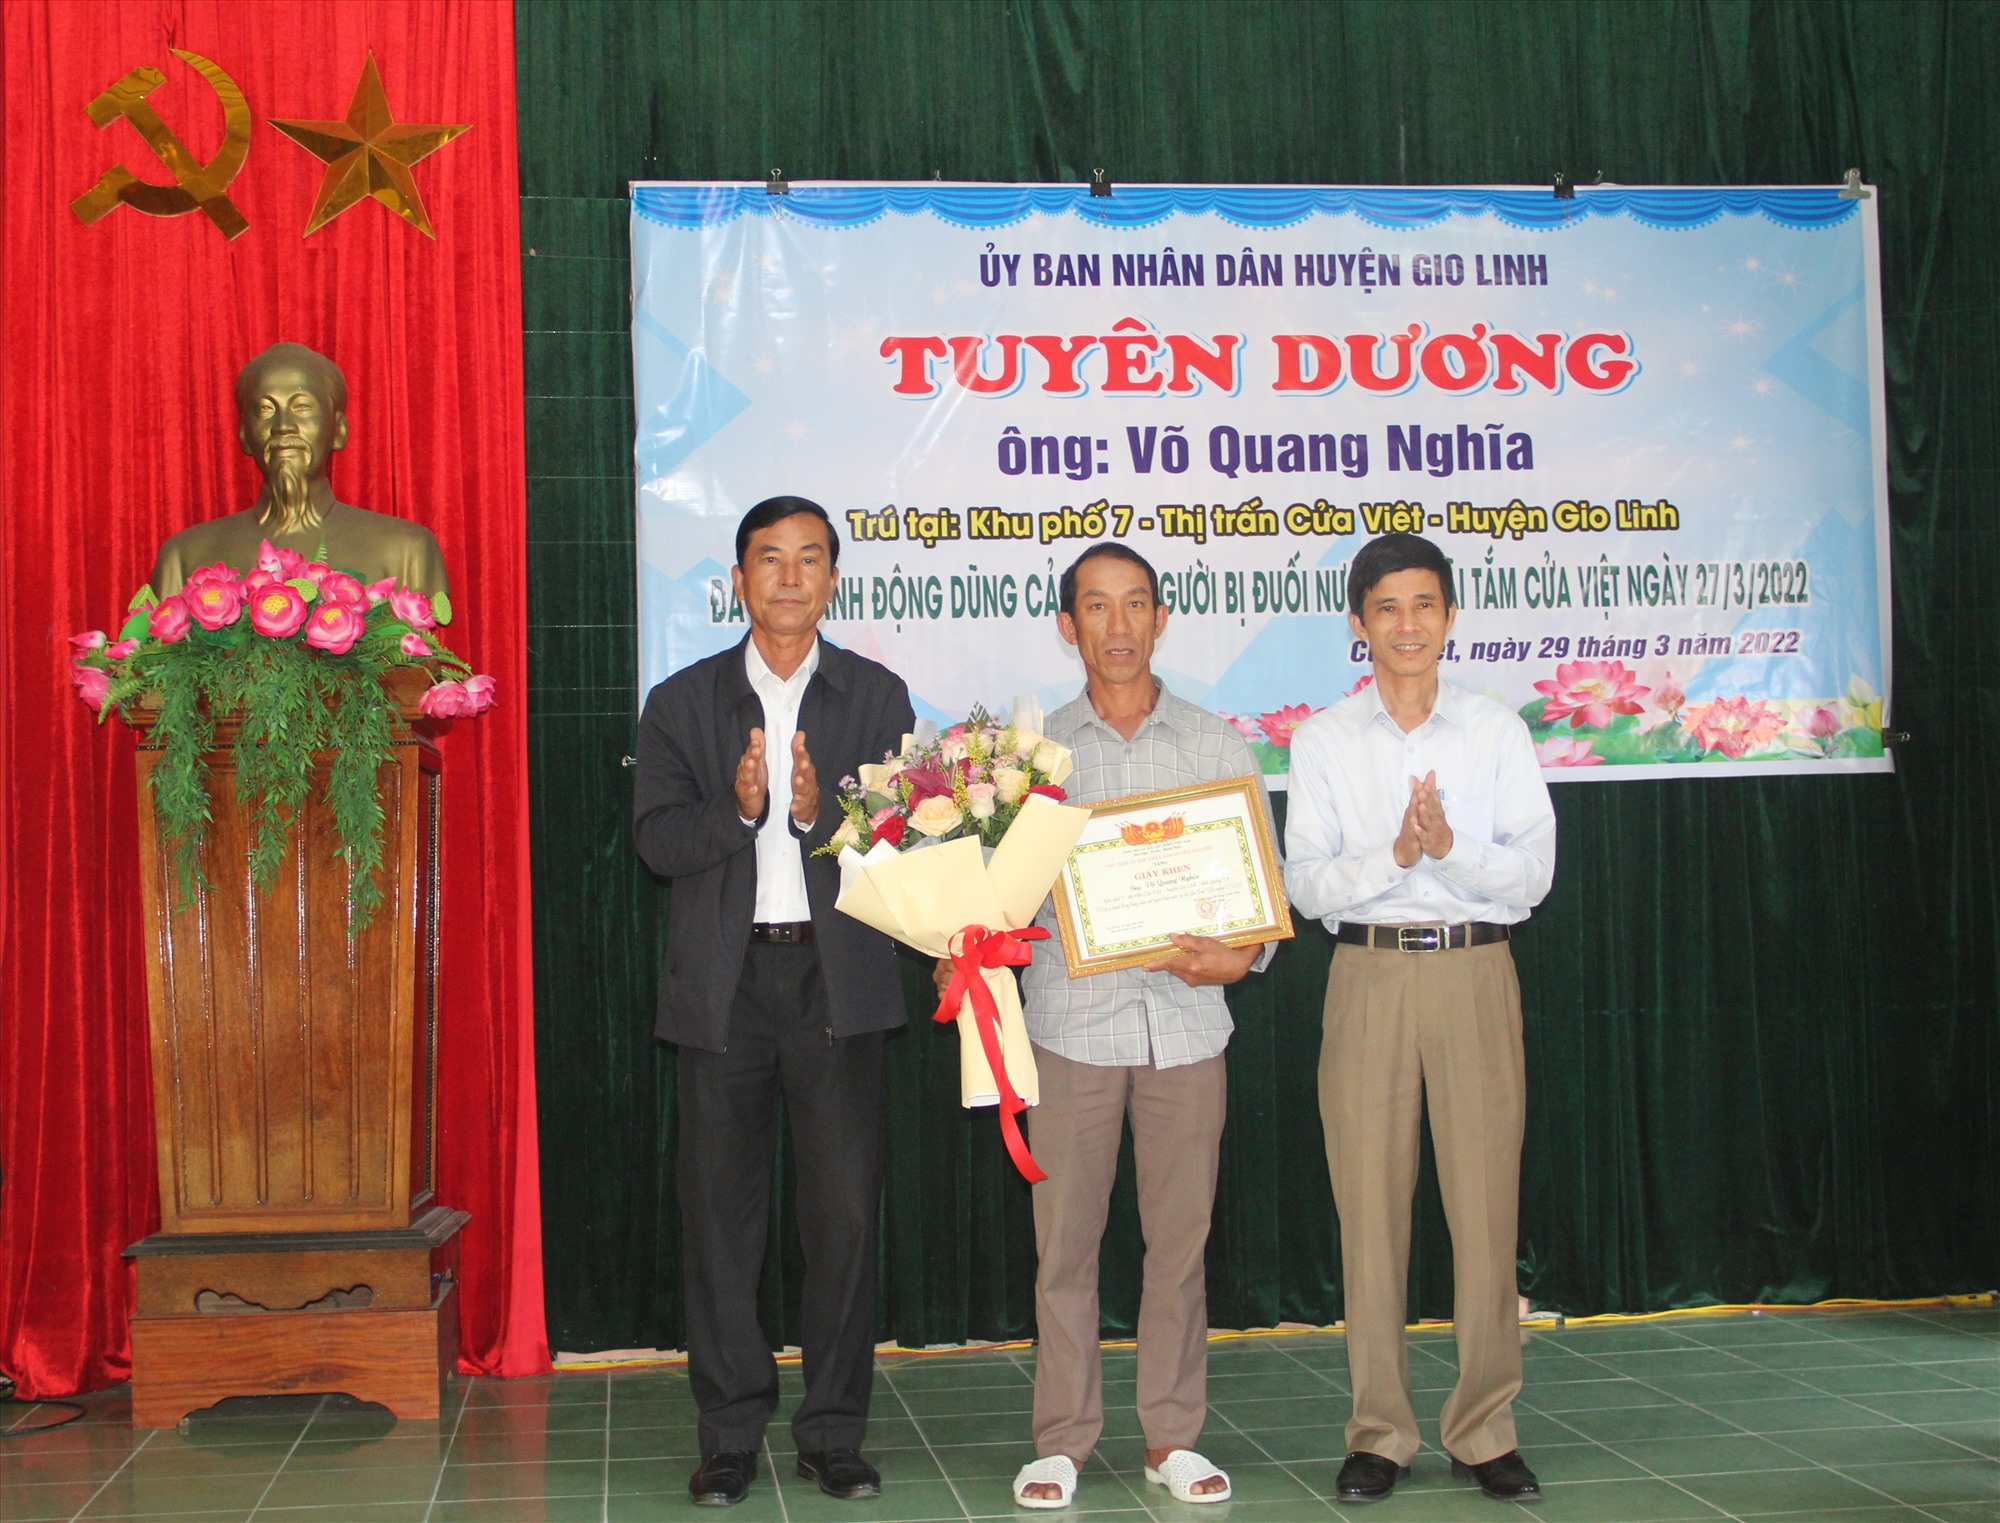 Chủ tịch UBND huyện Gio Linh Võ Đắc Hóa tặng giấy khen và biểu dương hành động dũng cảm của anh Võ Quang Nghĩa - Ảnh: HN